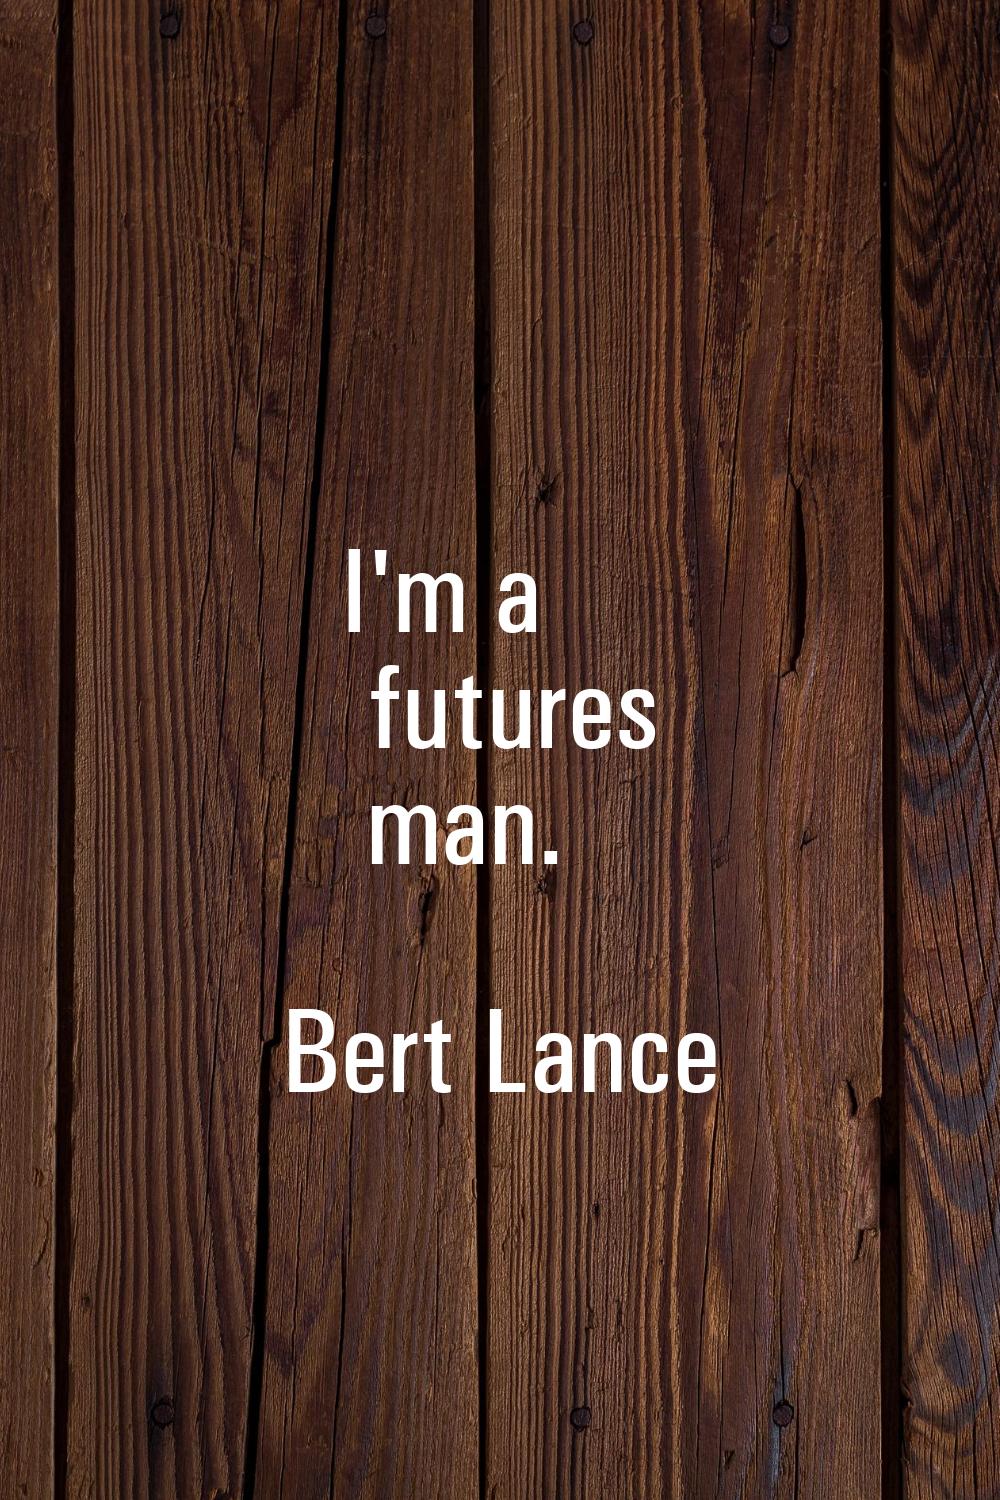 I'm a futures man.